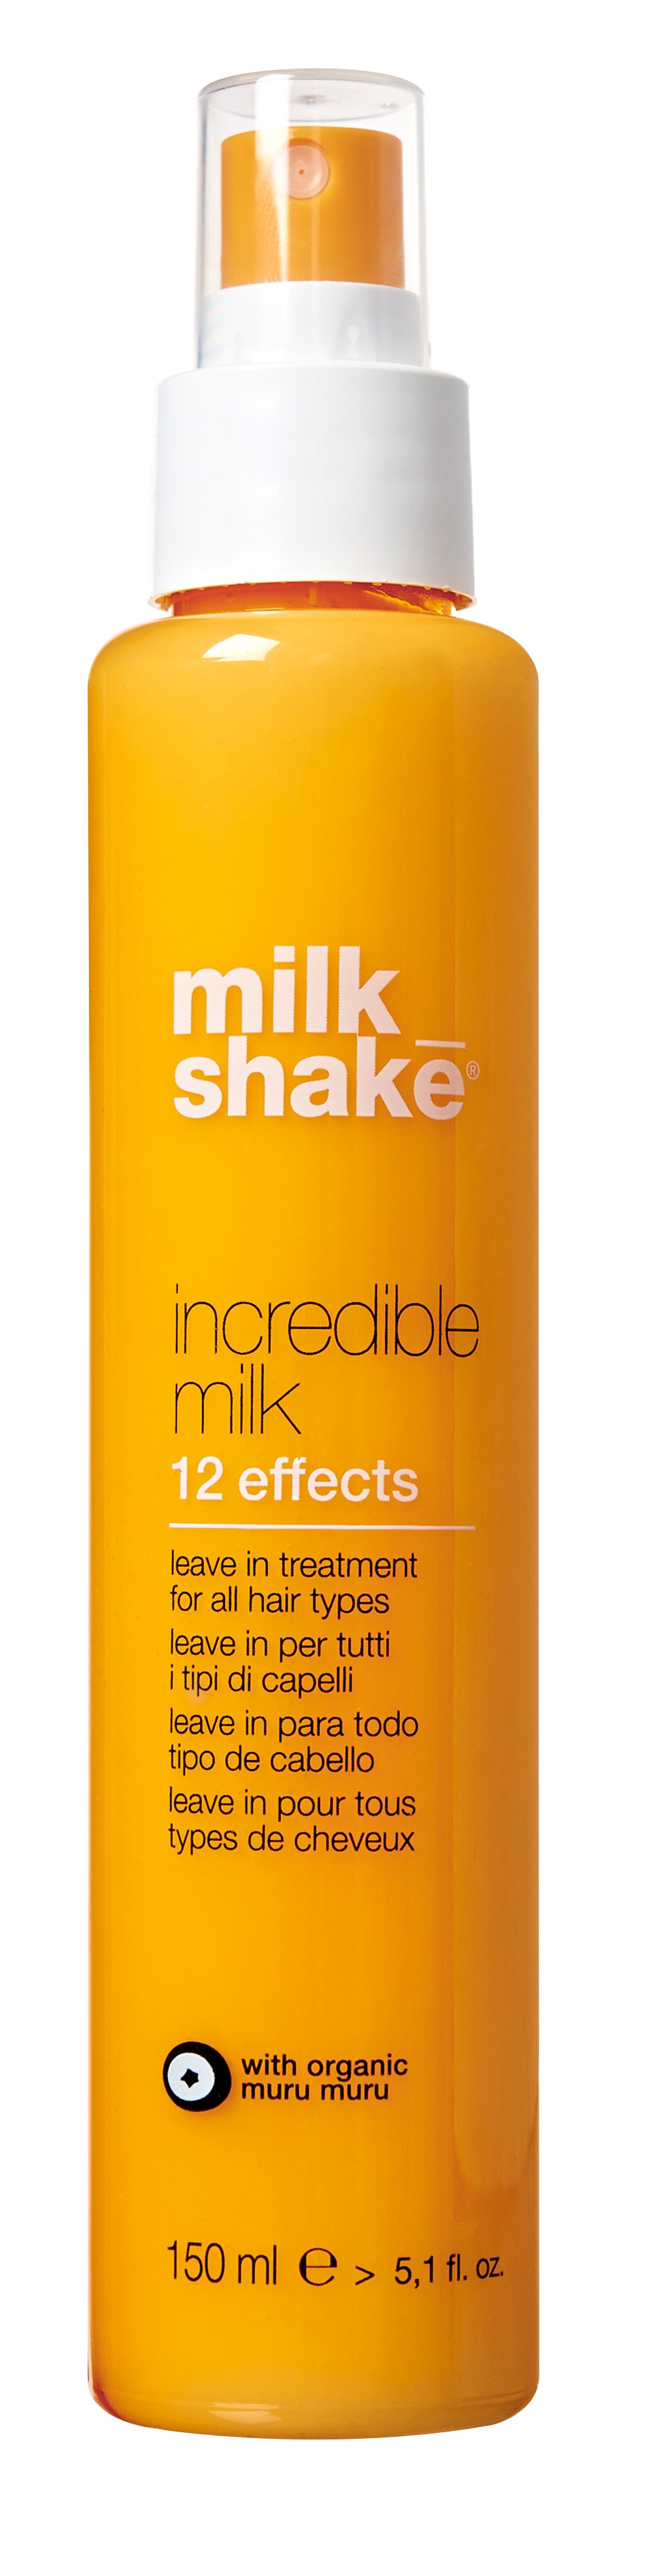 Купить Интенсивное молочко-кондиционер MILK_SHAKE Incredible Milk 12 эффектов 150 мл, MILK_SHAKE Incredible milk Интенсивное молочко-кондиционер 12 эффектов, 150 мл